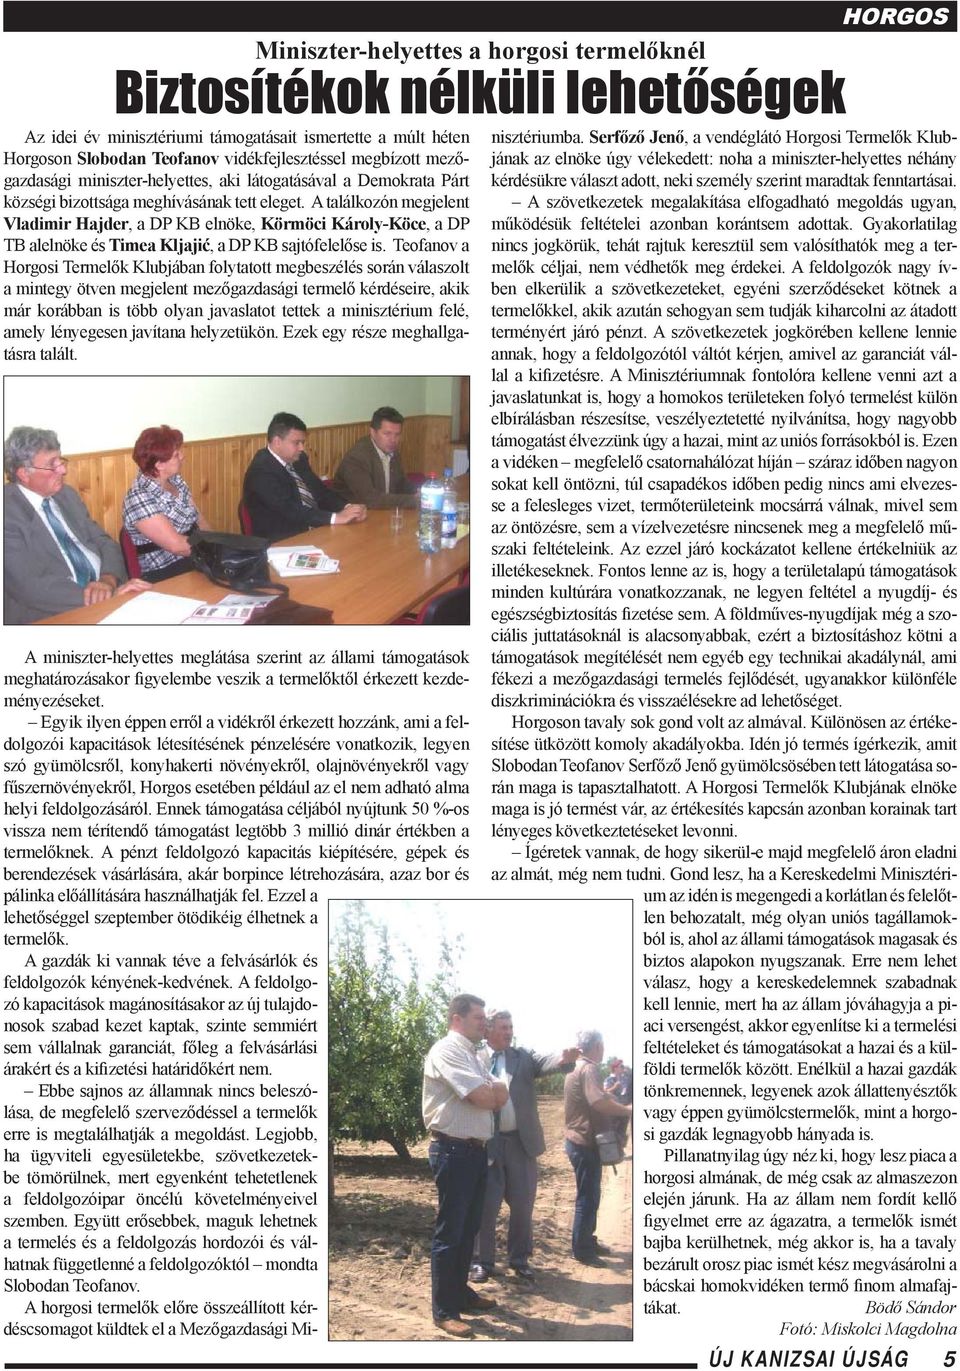 Teofanov a Horgosi Termelők Klubjában folytatott megbeszélés során válaszolt a mintegy ötven megjelent mezőgazdasági termelő kérdéseire, akik már korábban is több olyan javaslatot tettek a